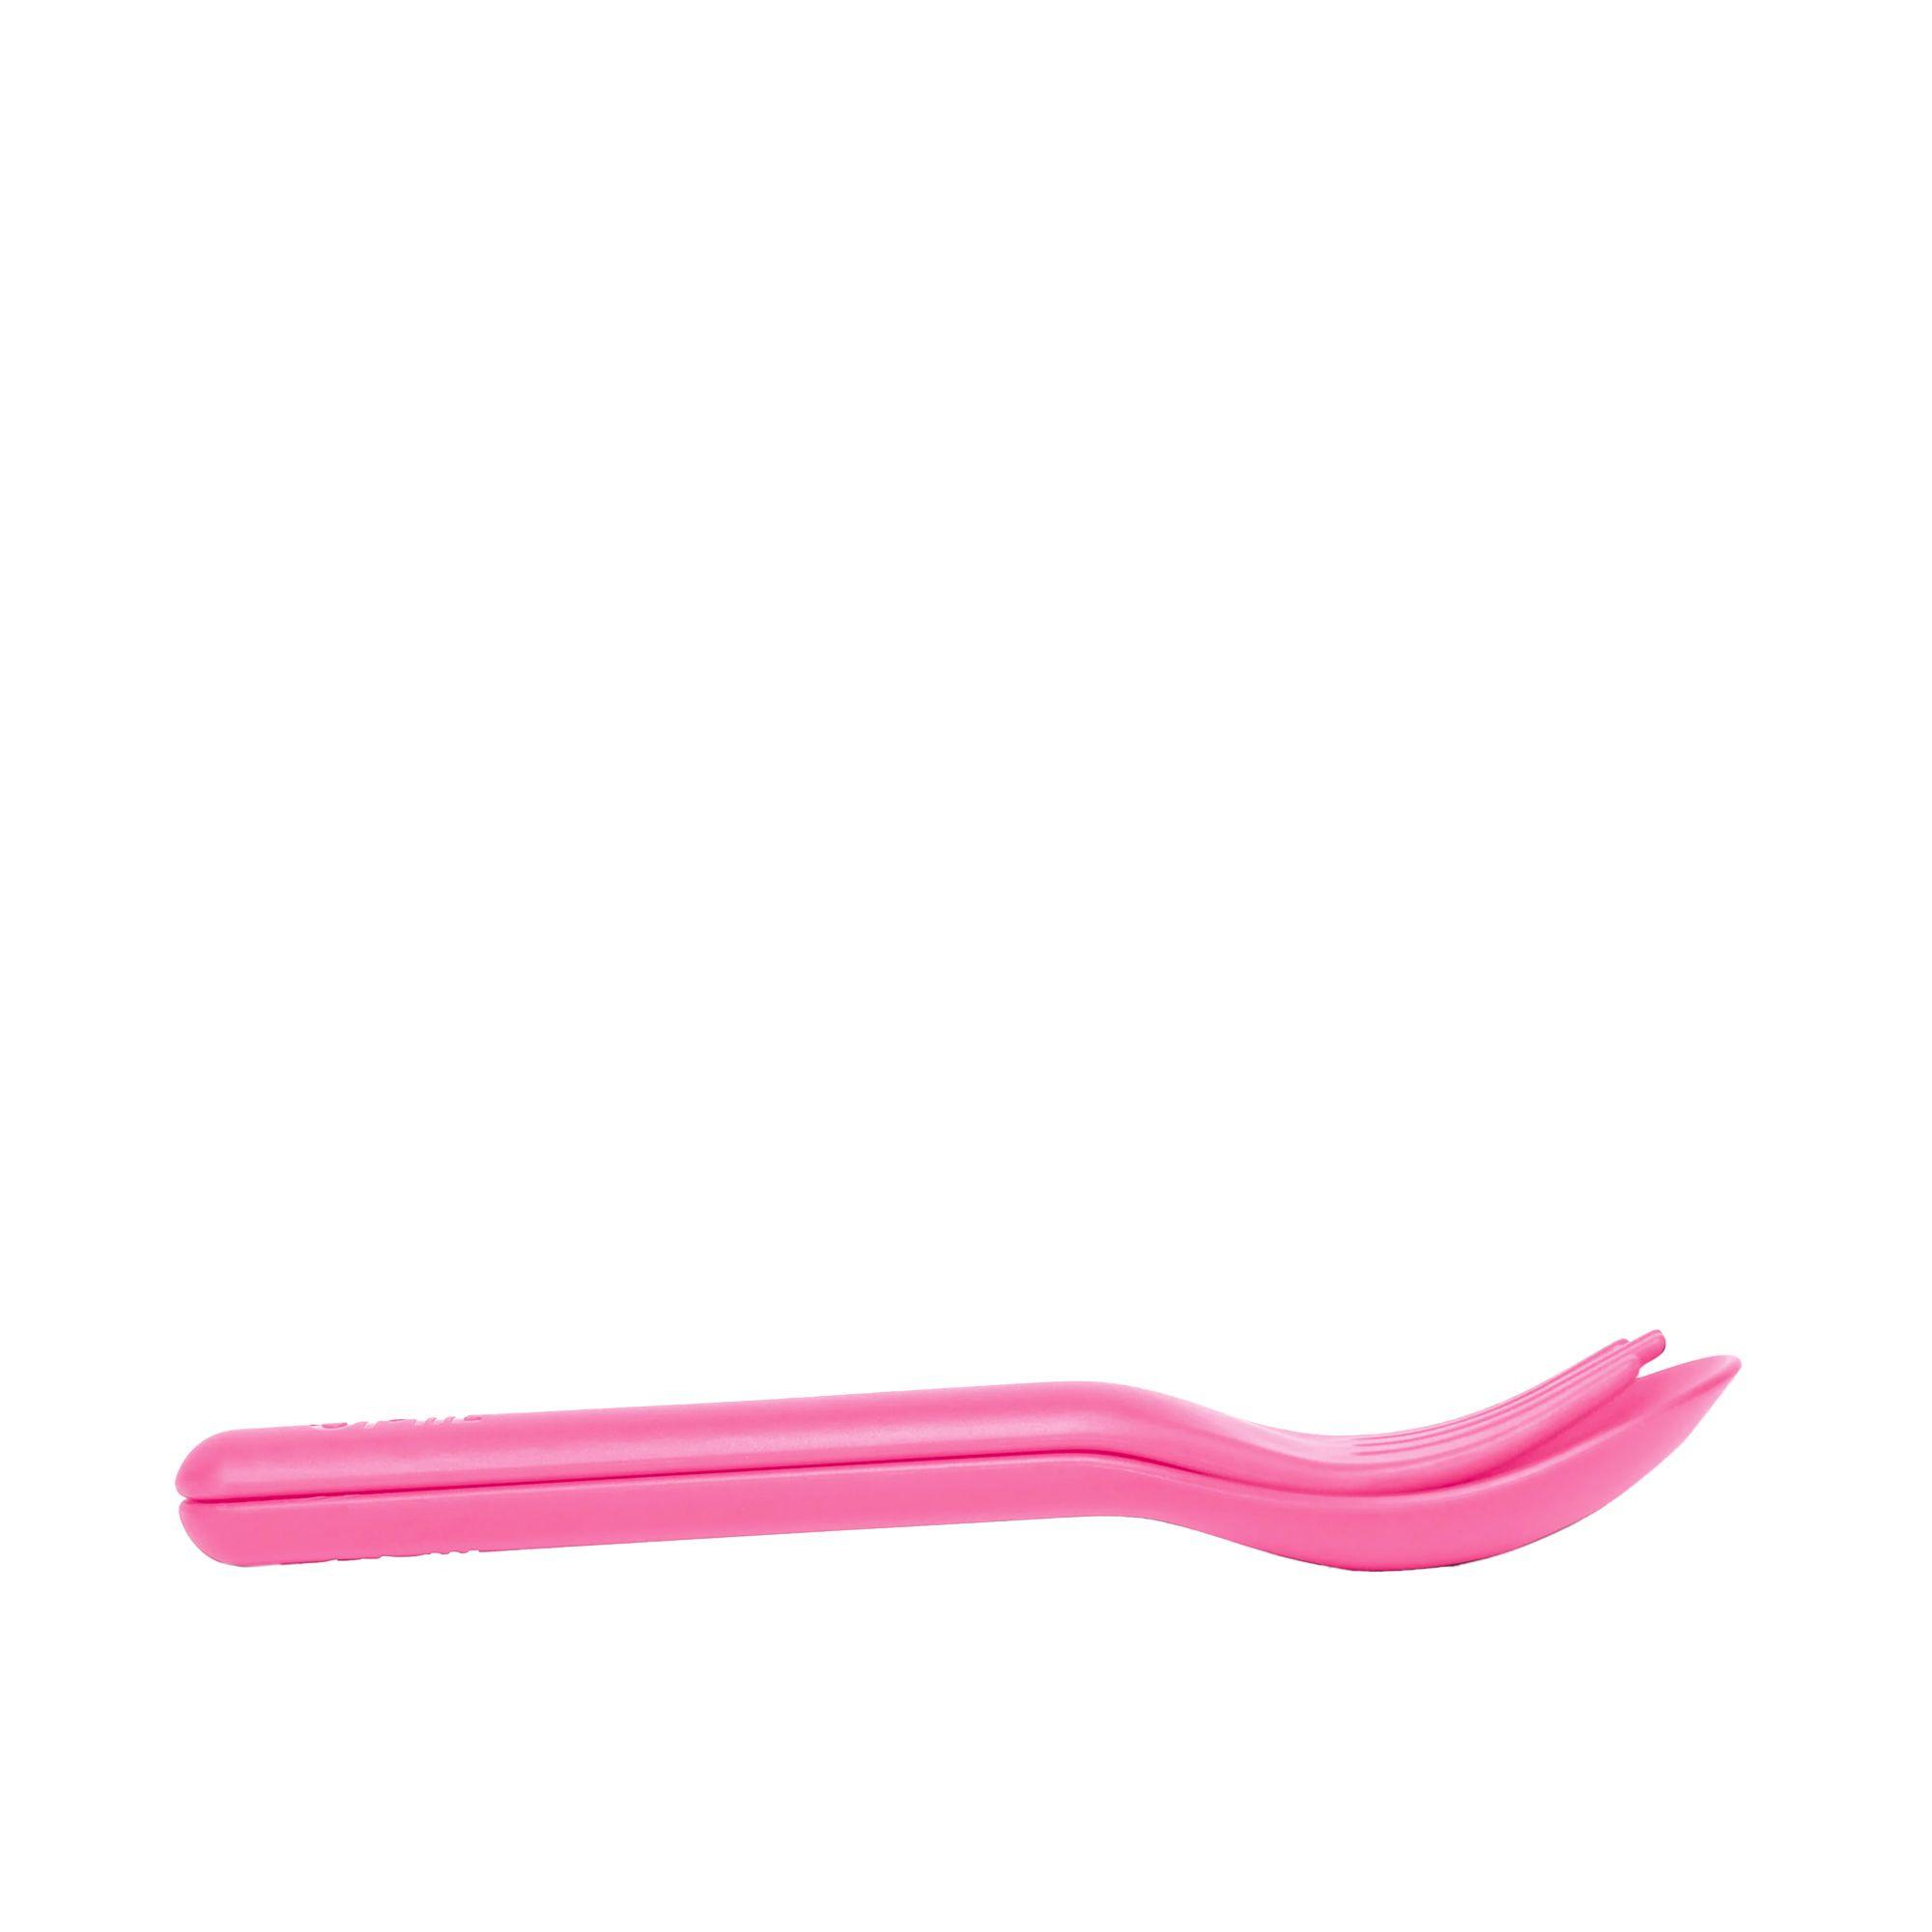 Omie OmiePod Cutlery Set 3pc Bubble Pink Image 4